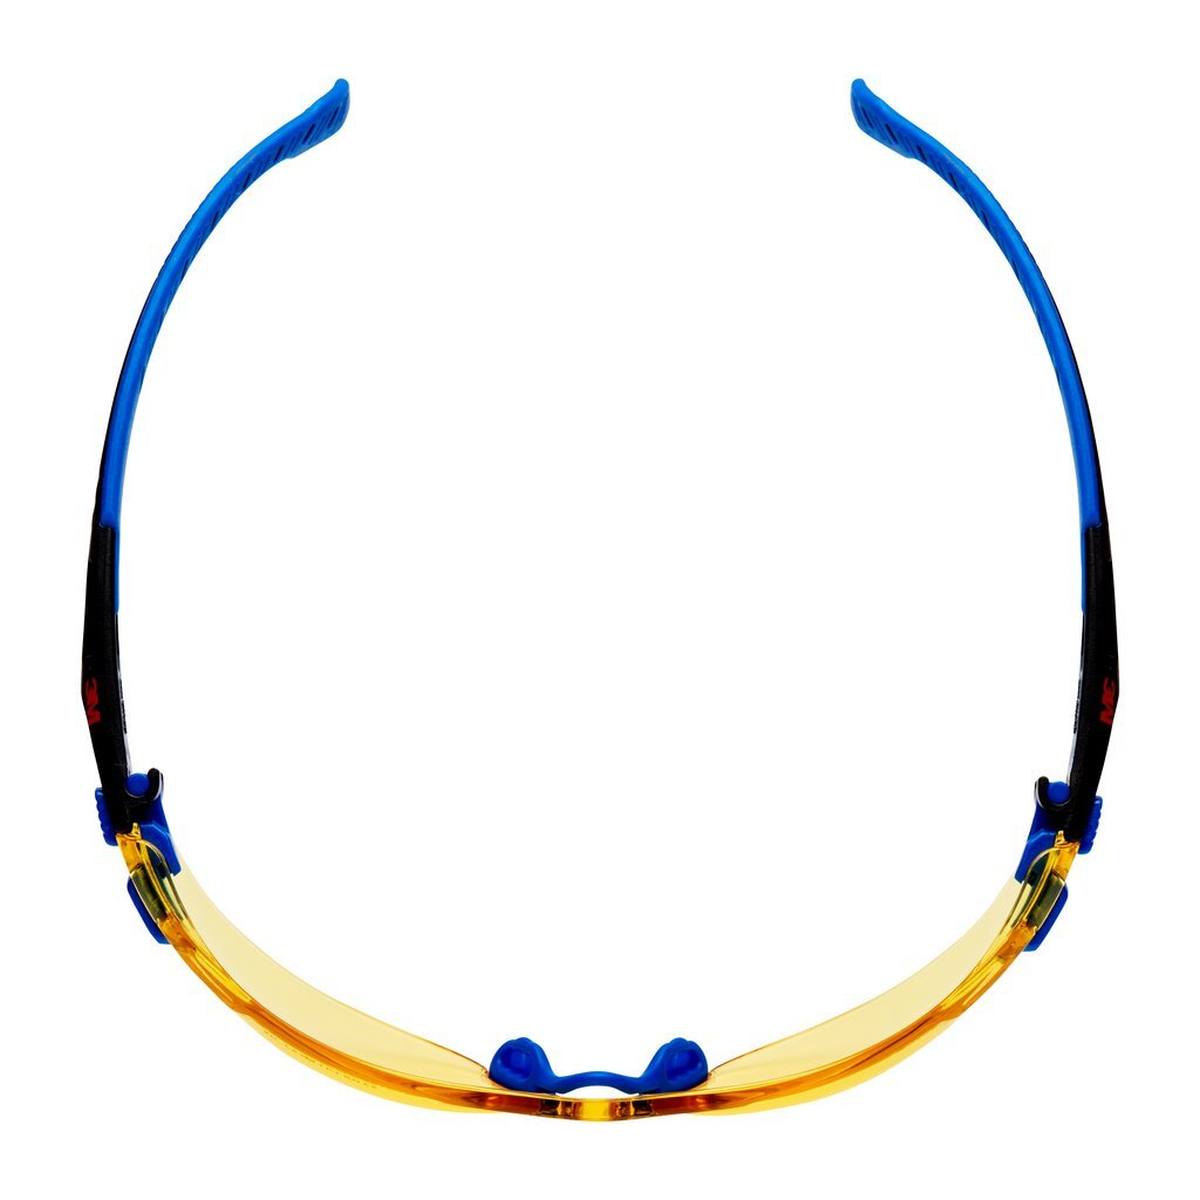 3M Solus 1000 Schutzbrille, blau/schwarzer Rahmen, Scotchgard Anti-Fog-/Antikratz-Beschichtung (K&N), gelbe Scheibe, S1103SGAF-EU